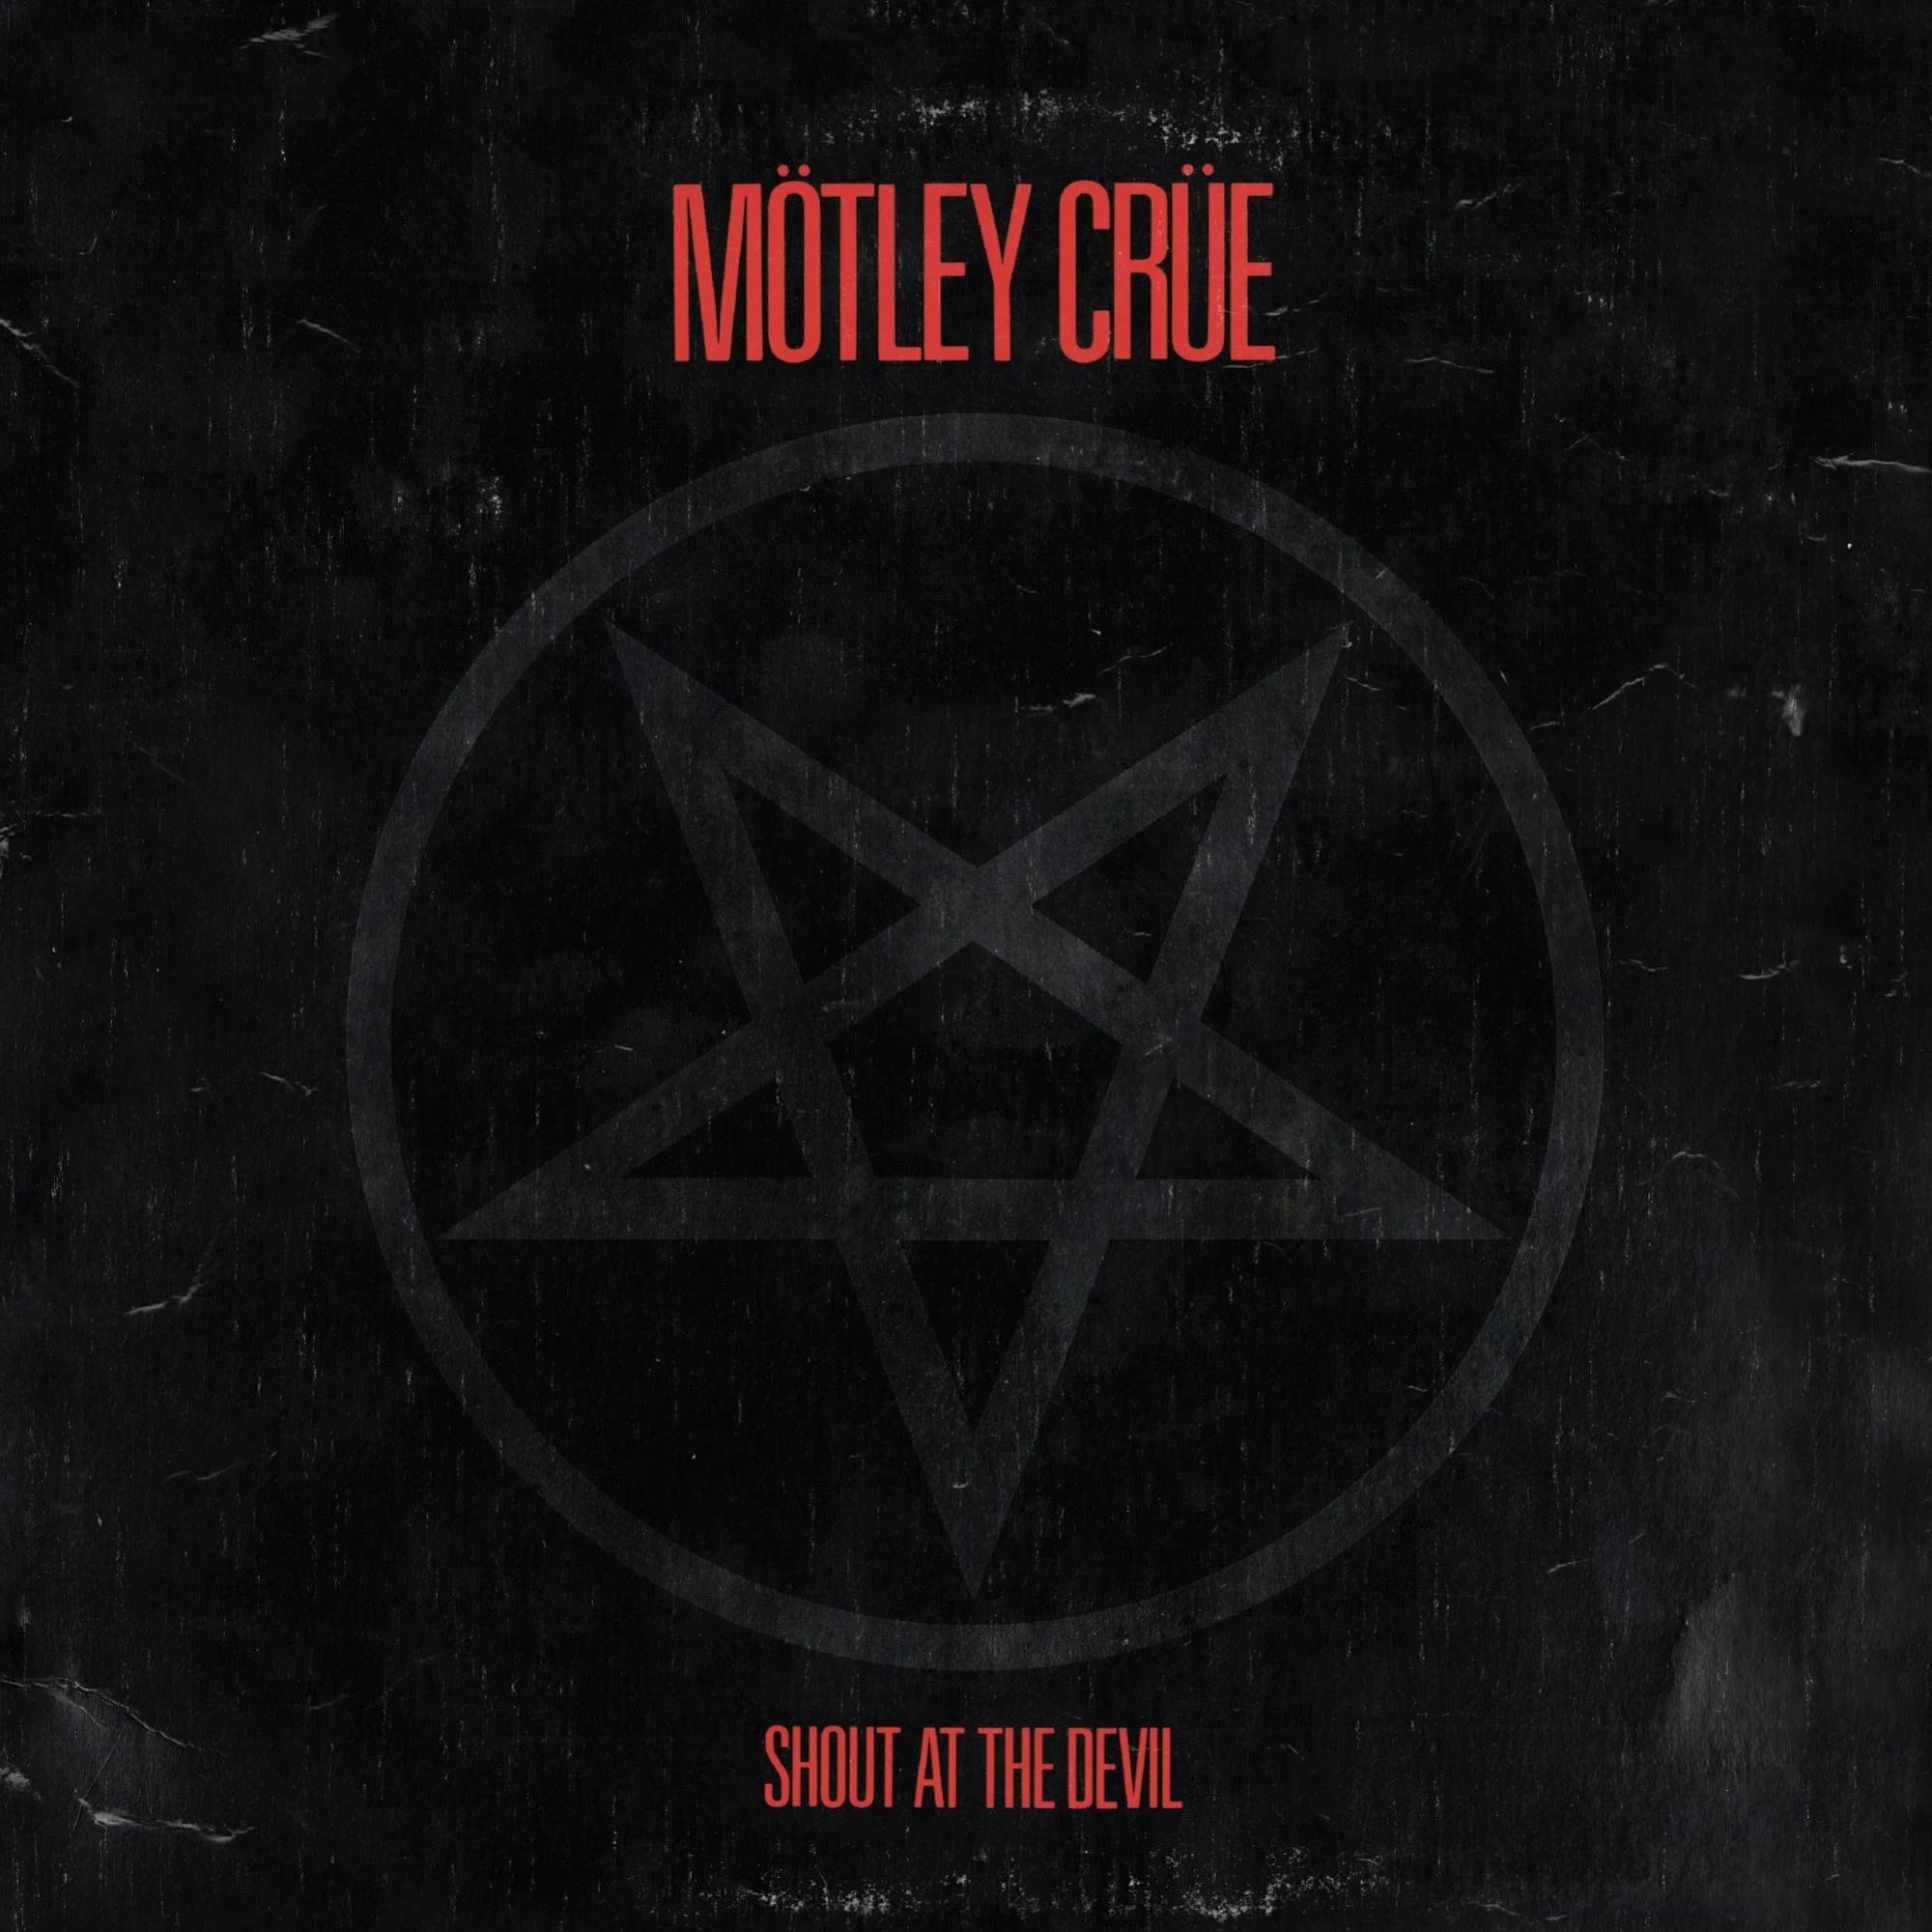 MOTLEY CRUE - SHOUT AT THE DEVIL Vinyl LP